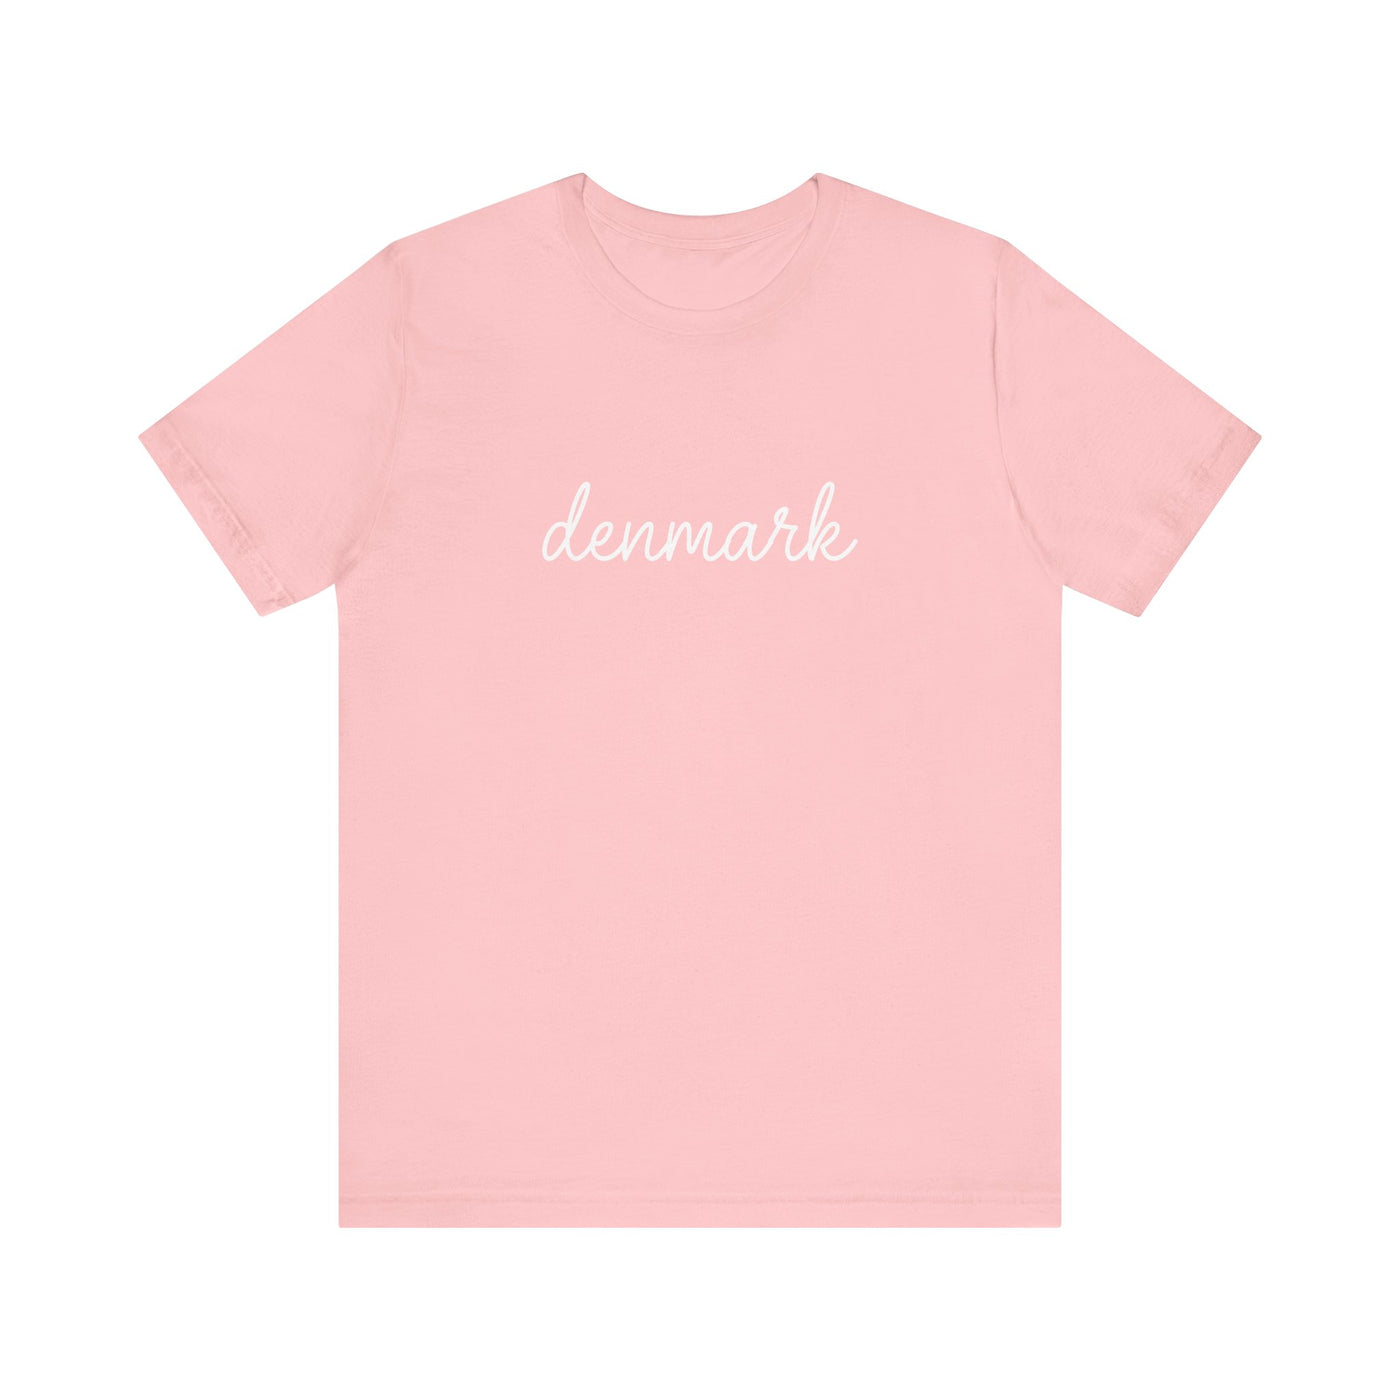 Denmark Script Unisex T-Shirt